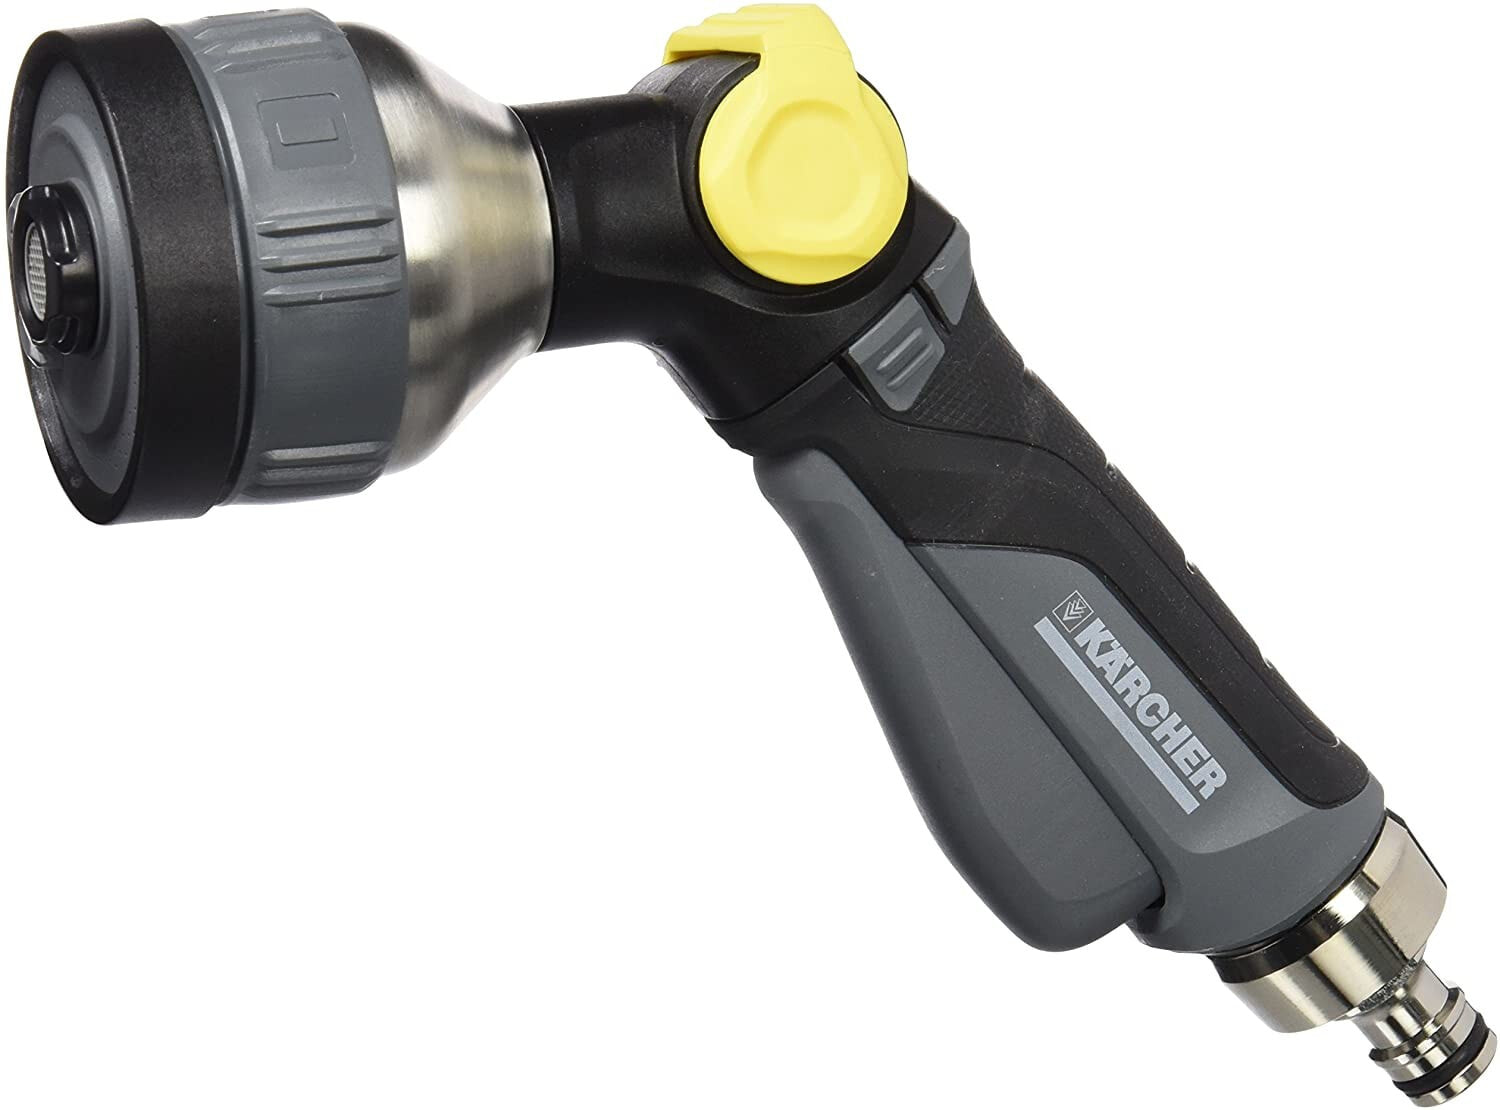 Пистолет, насадка или дождеватель для шлангов Staubbeutel-Profi Karcher 2.645-271.0 20.5 x 7.0 x 17.6 cm Premium Multi-Functional Spray Gun - Yellow/Black/Grey